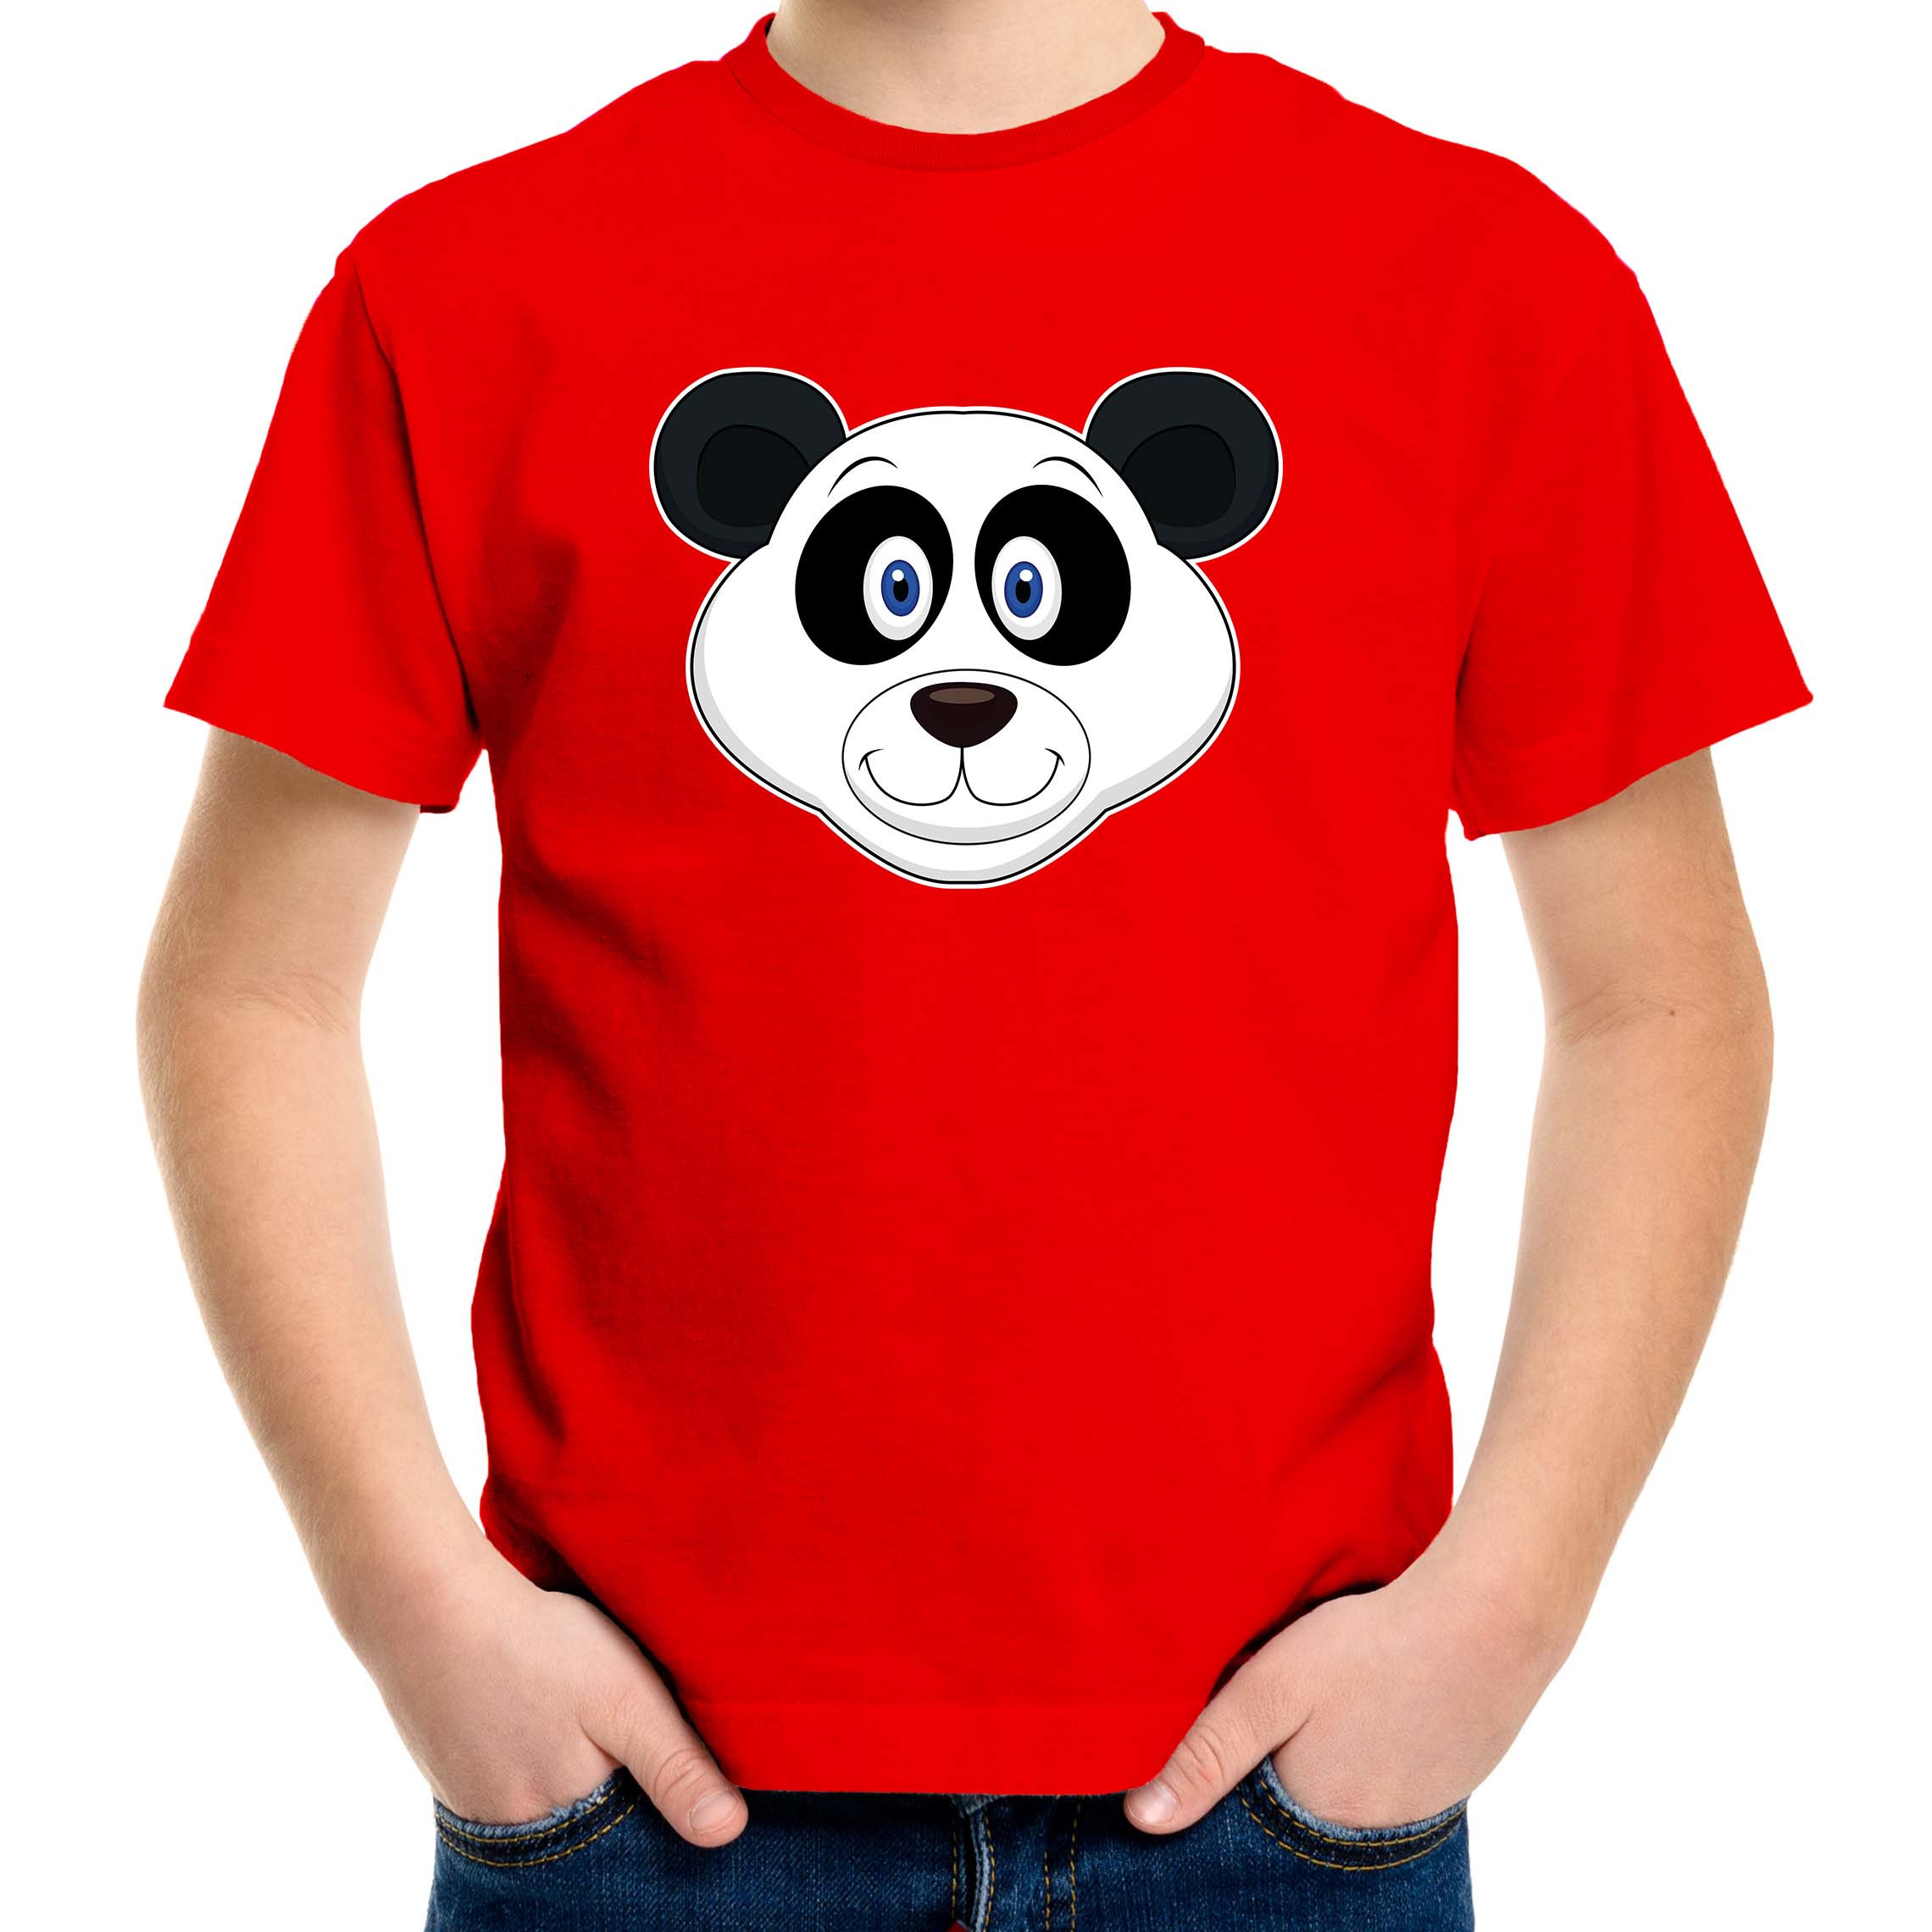 Cartoon panda t-shirt rood voor jongens en meisjes - Cartoon dieren t-shirts kinderen